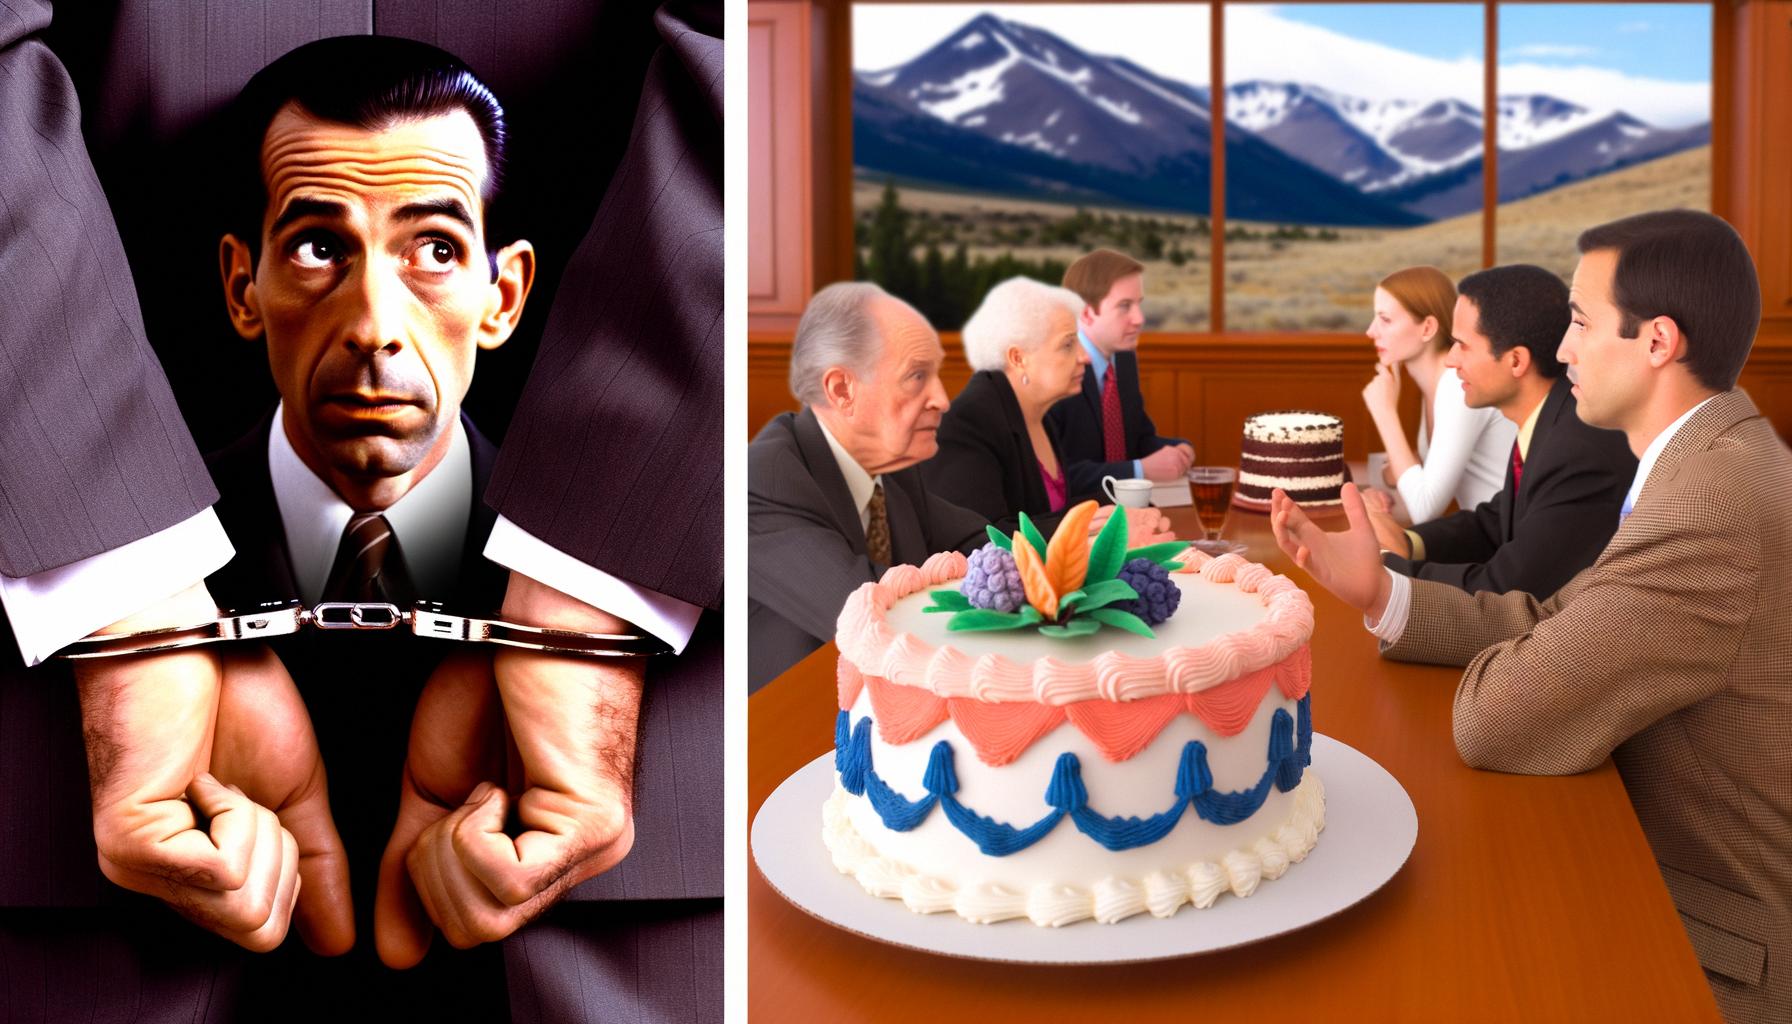 Whistleblower faces prison, Colorado cake case debated Balanced News